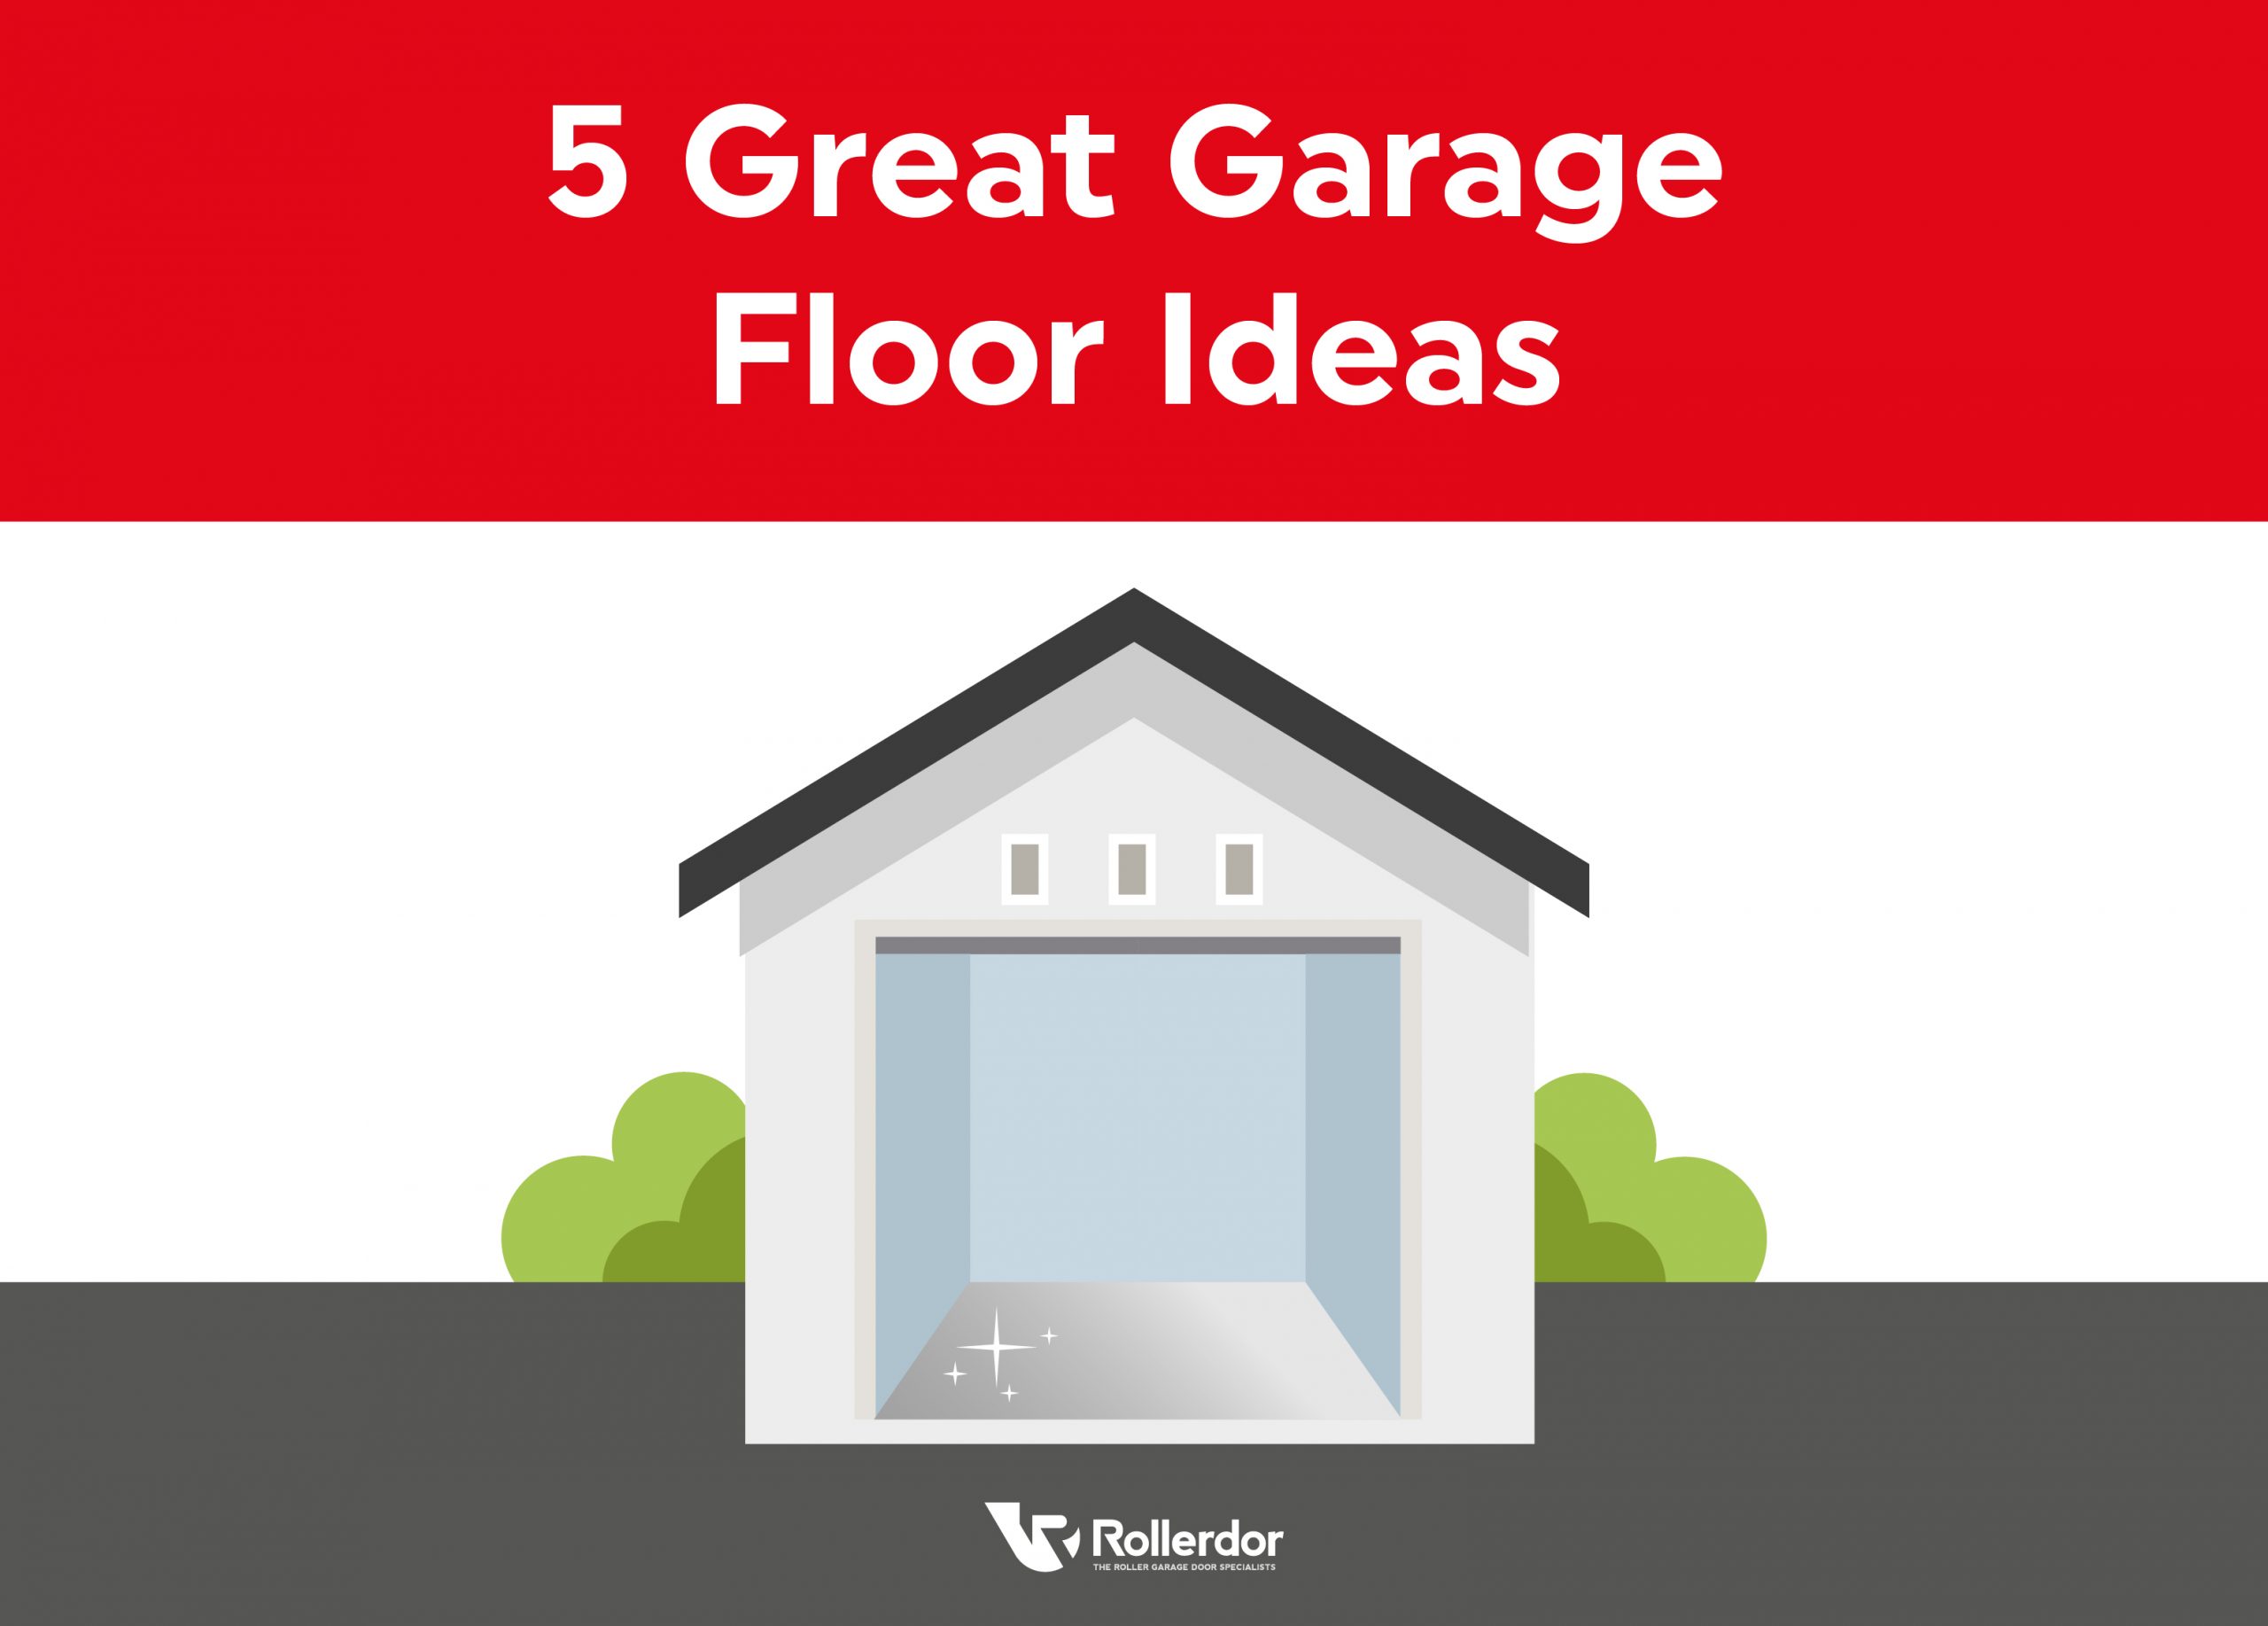 5 Great Garage Floor Ideas